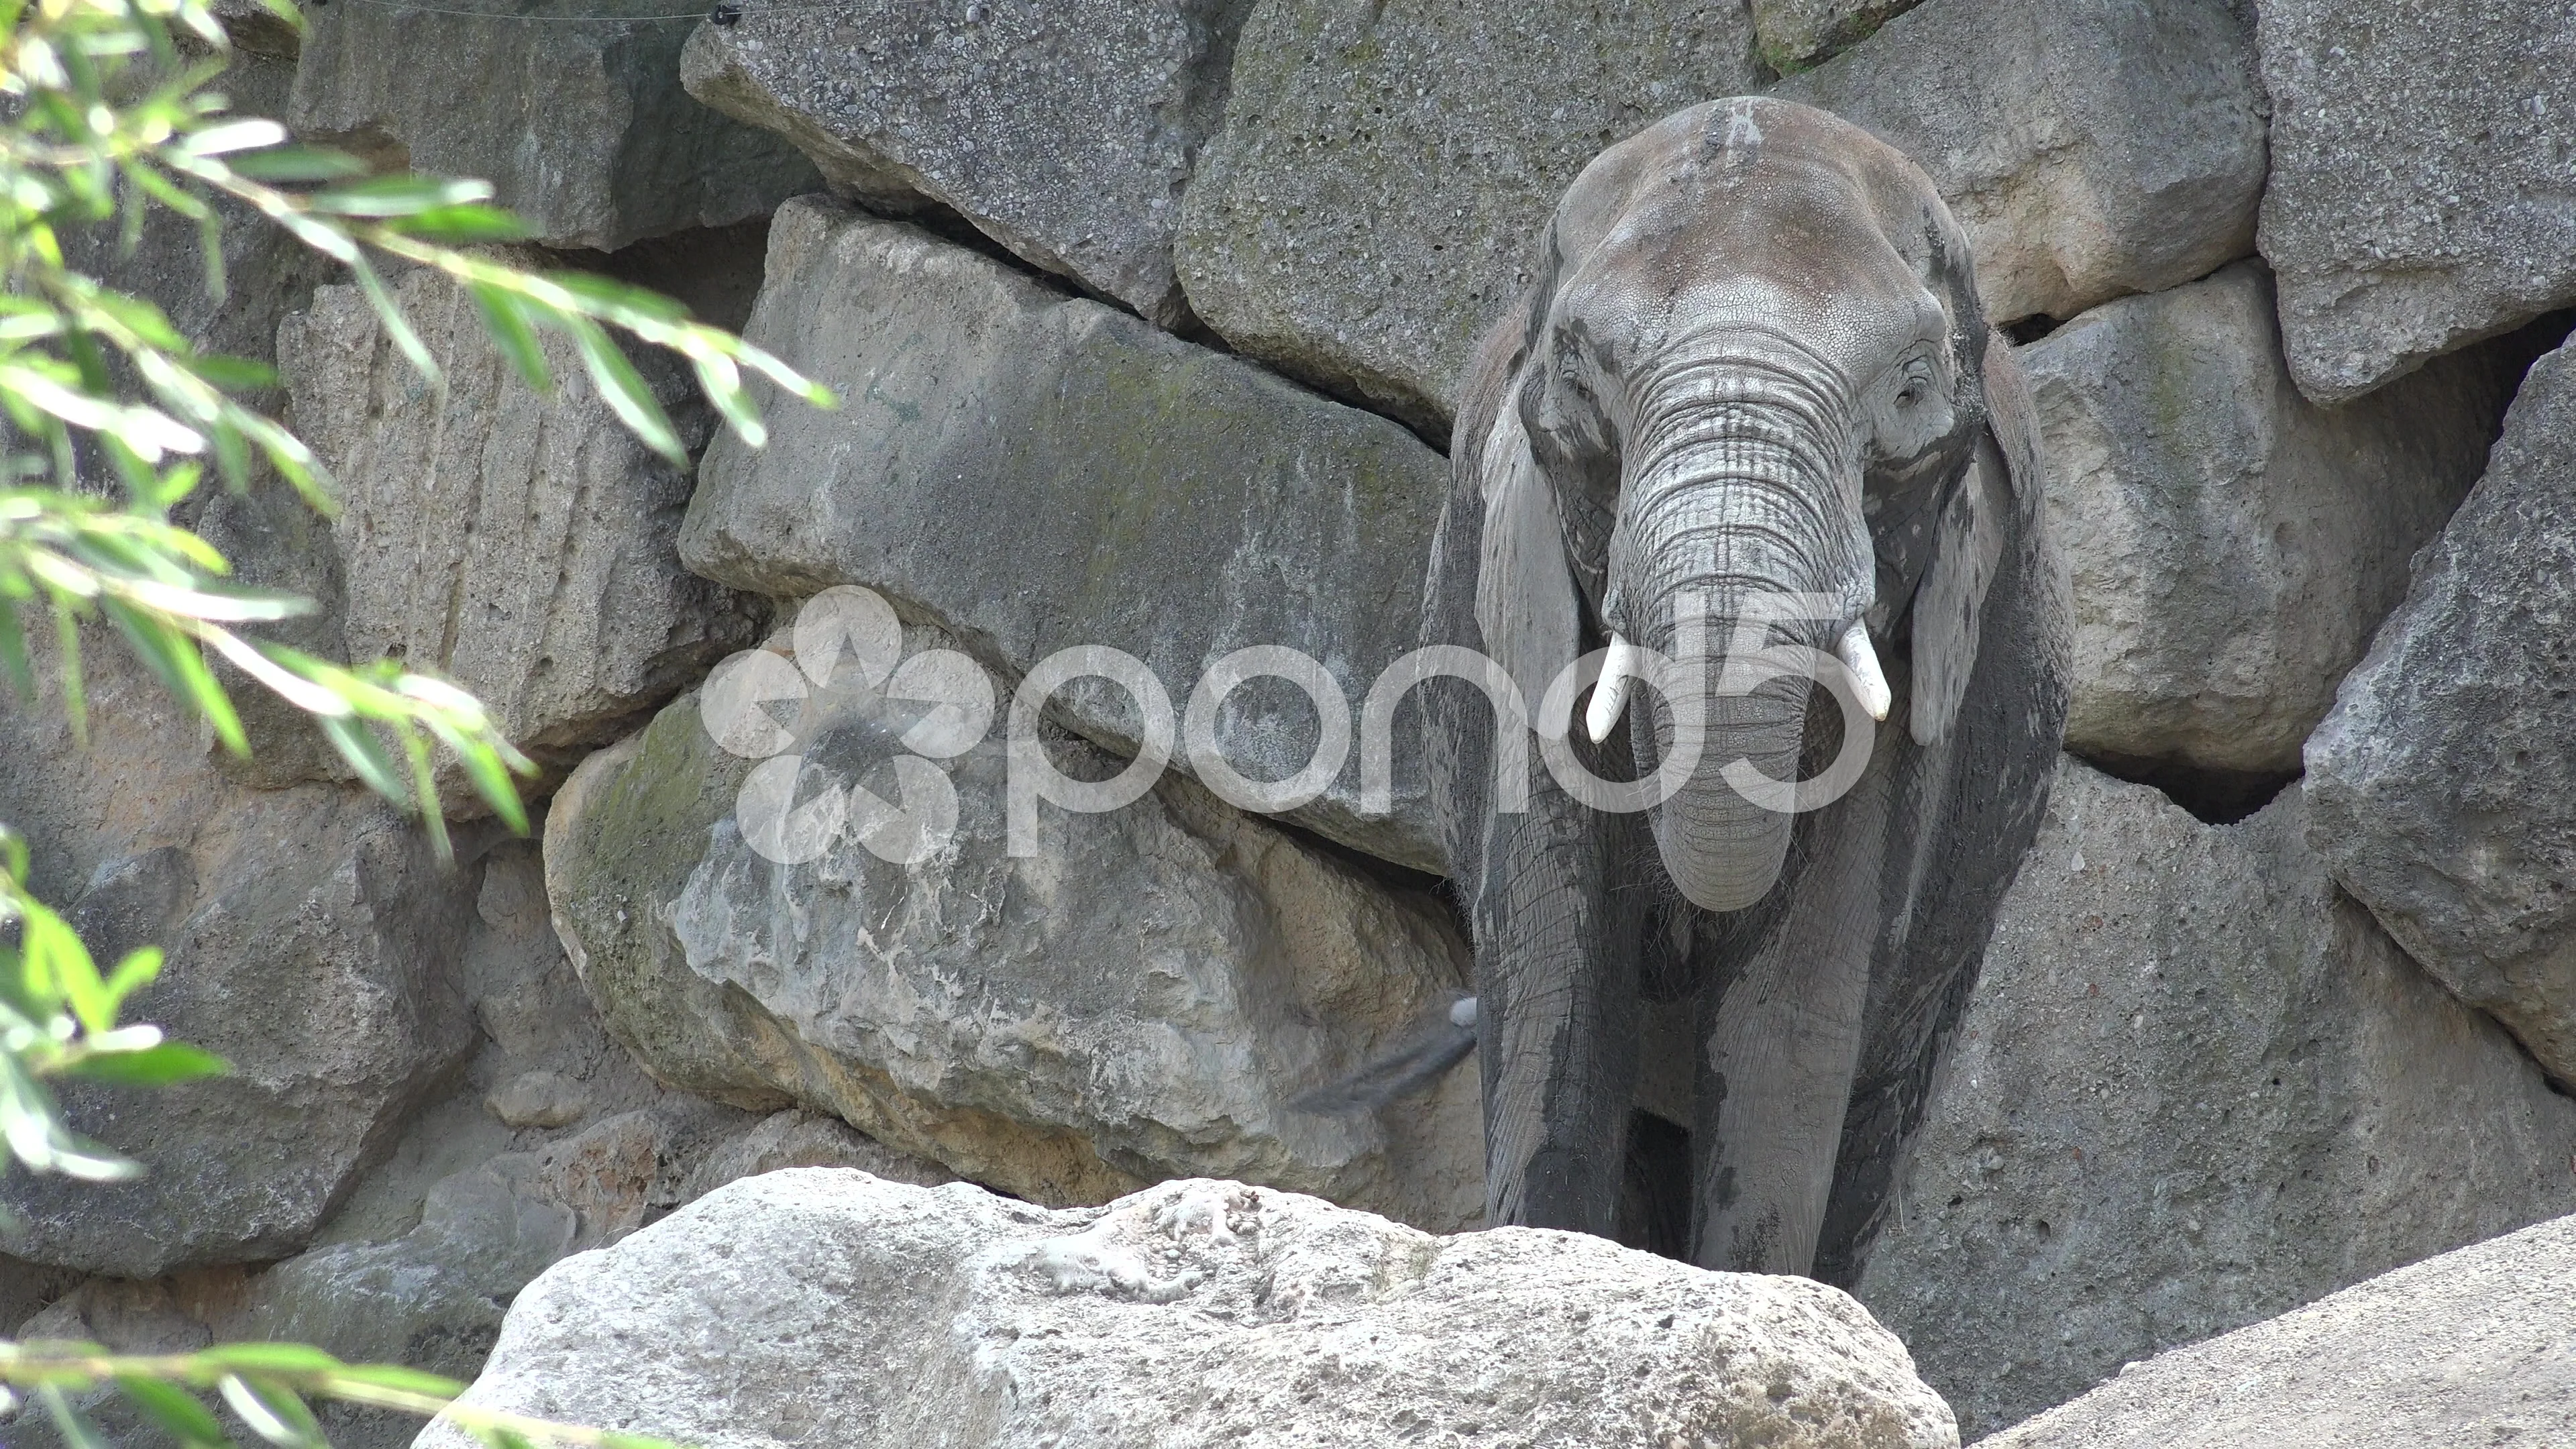 Elephant Desktop Wallpaper (78+ pictures)